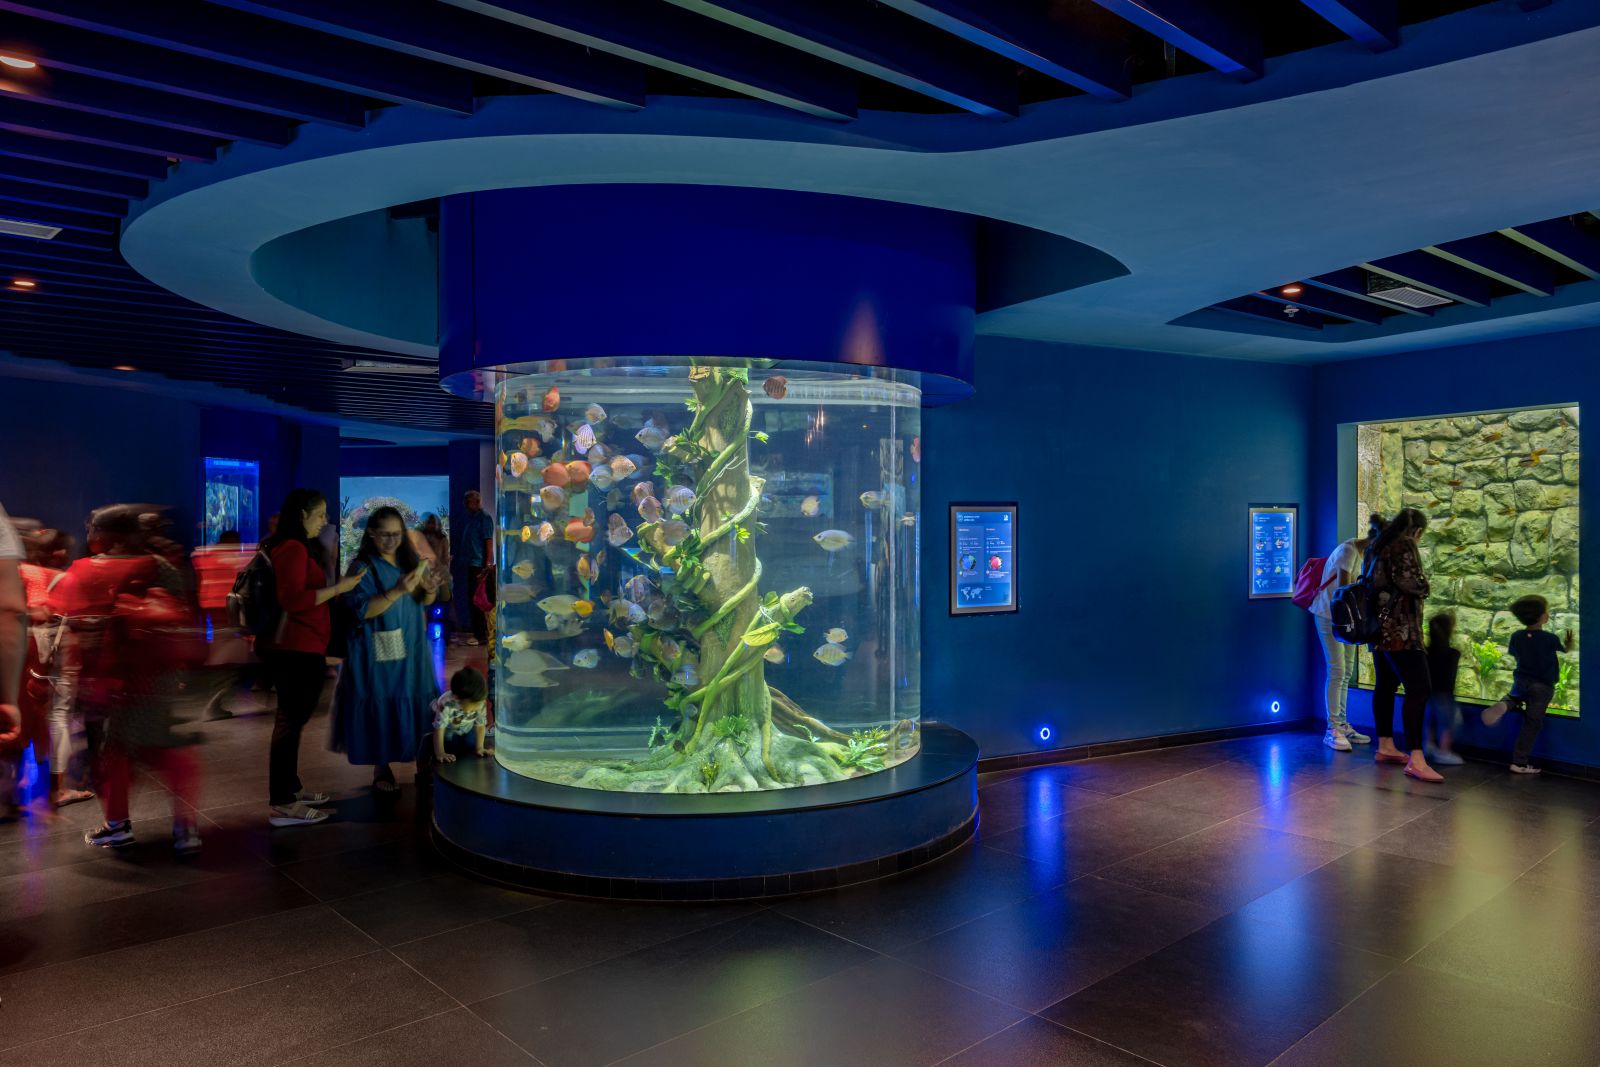 Aquatic Gallery